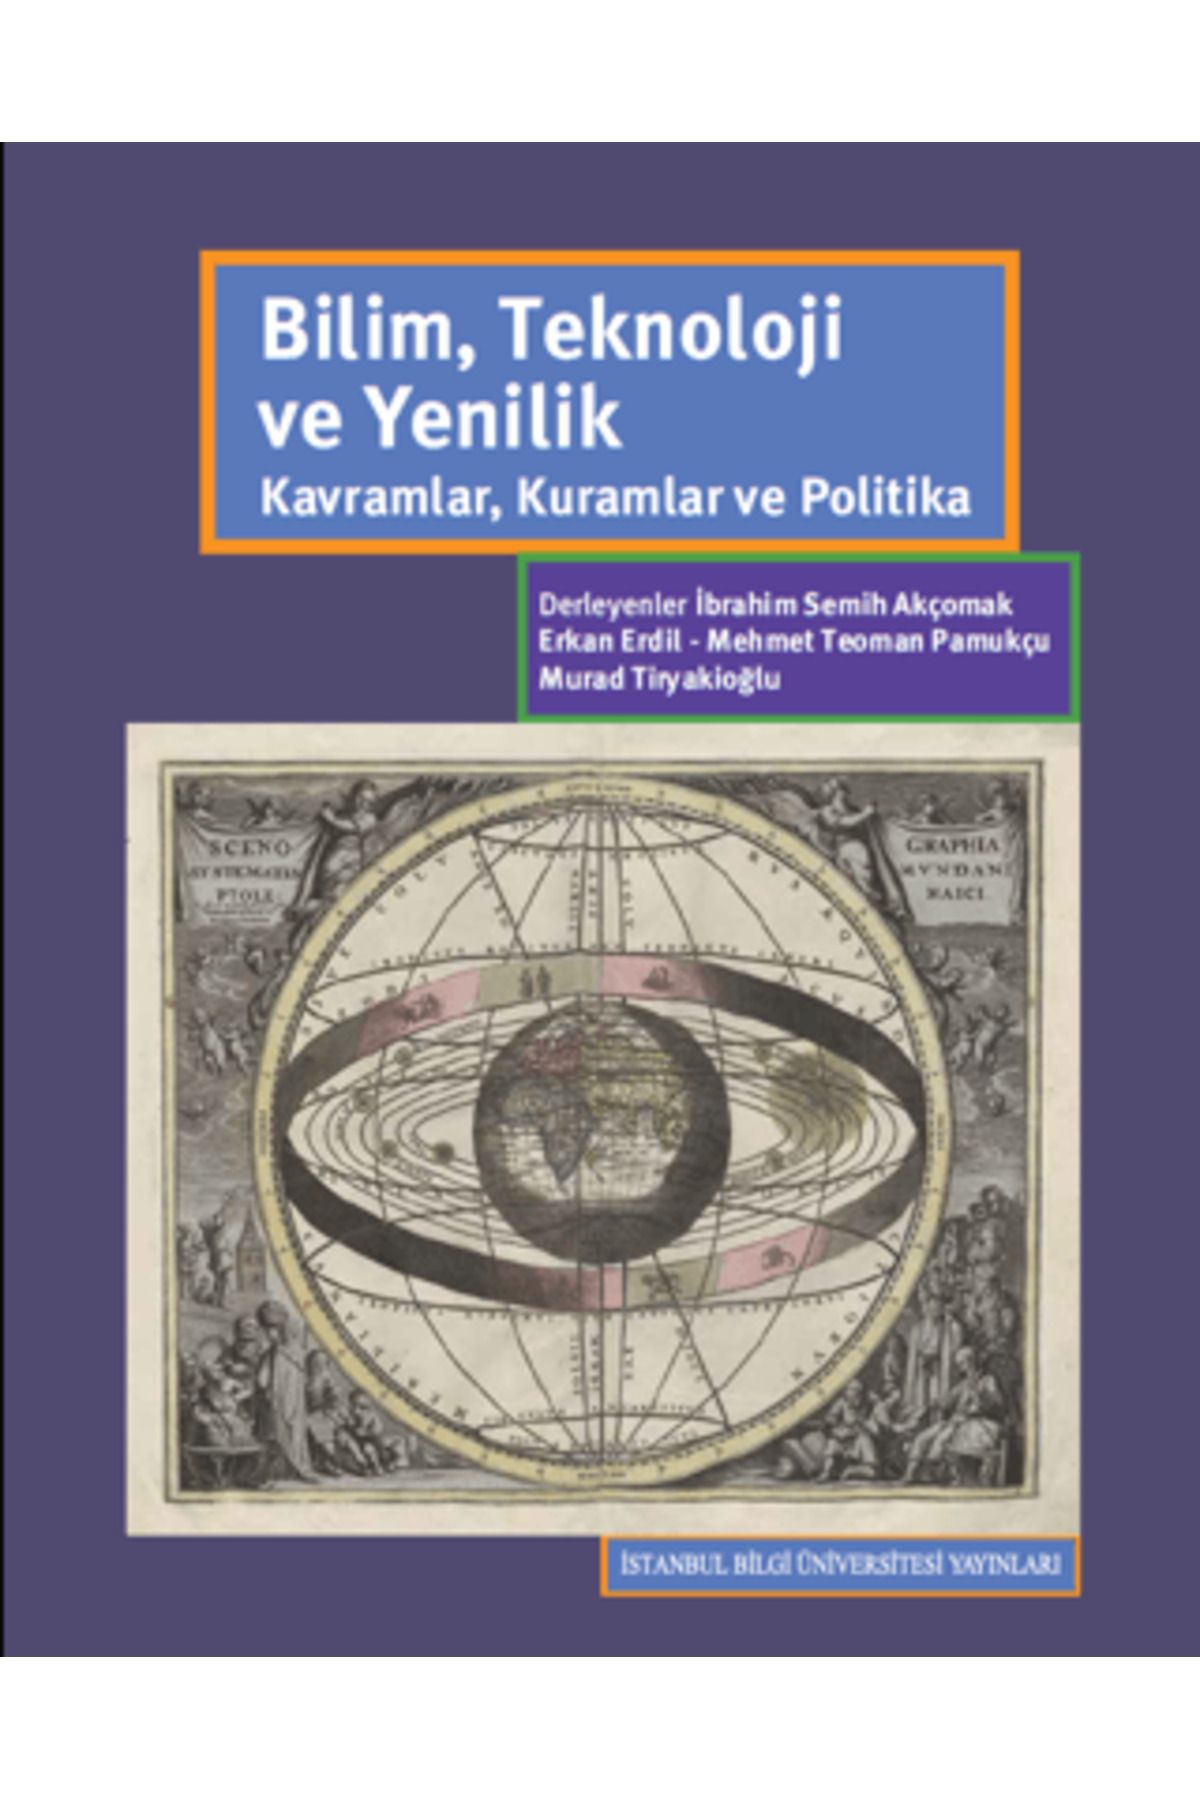 İstanbul Bilgi Üniversitesi Yayınları Bilim Teknoloji ve Yenilik